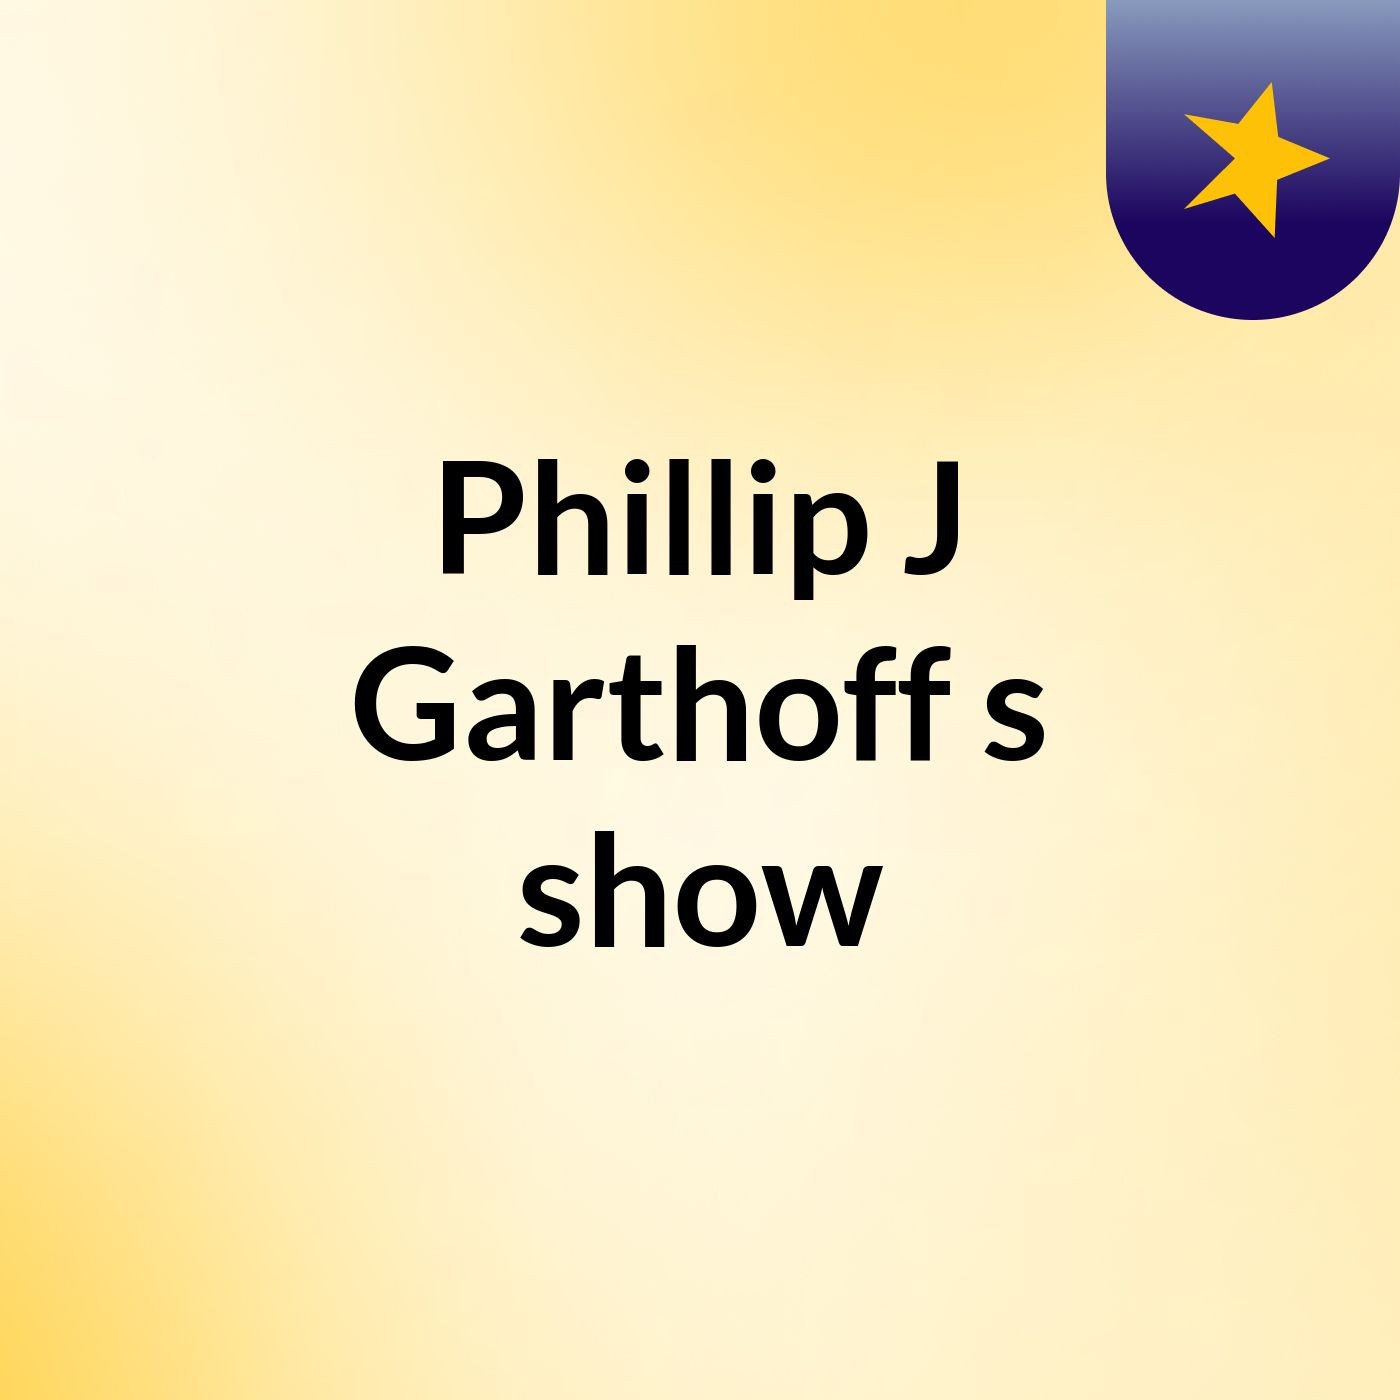 Episode 10 - Phillip J Garthoff's show